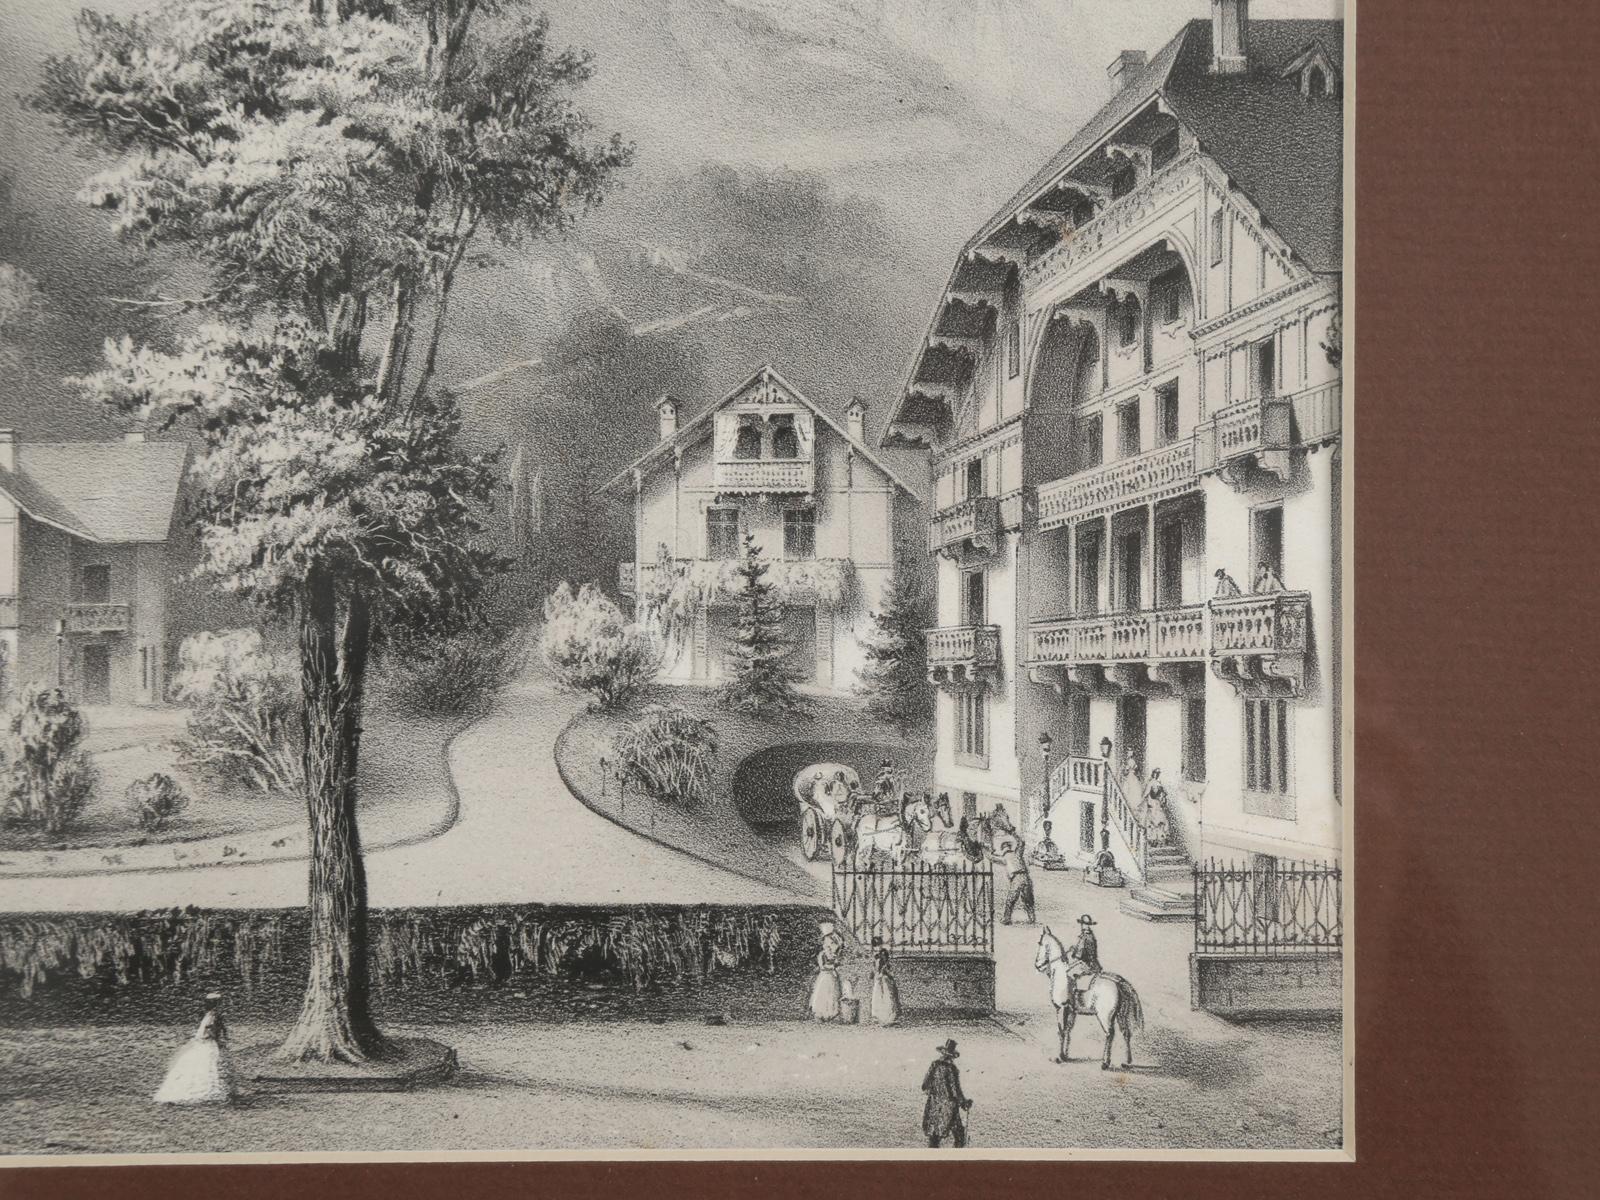 Title Vues Nouvelles or New Views, Black Forest Village Scene, circa 1800s 4